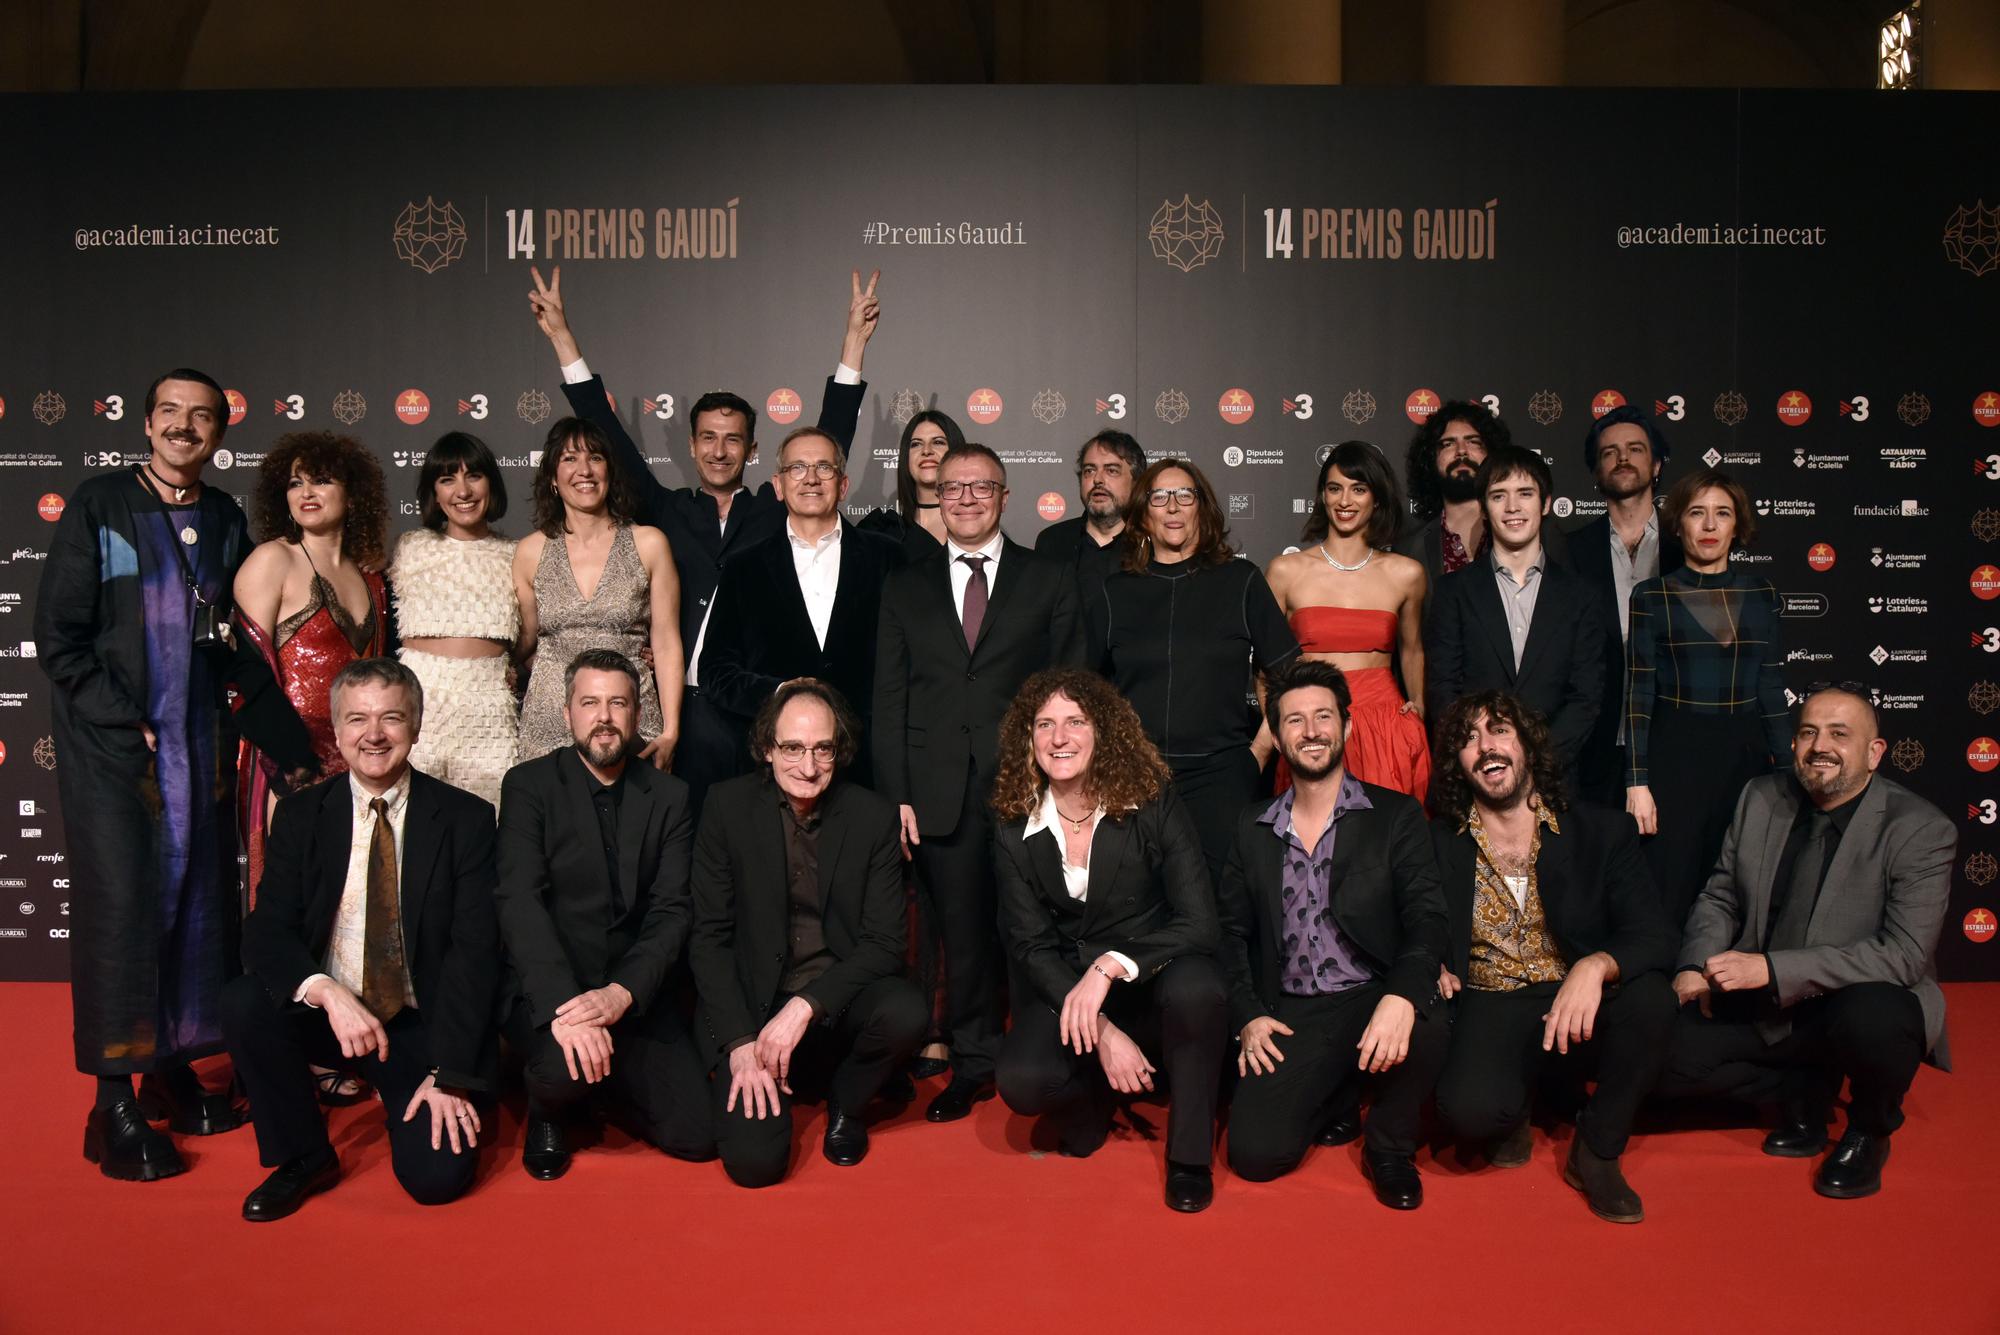 Les millors imatges dels Premis Gaudí 2022